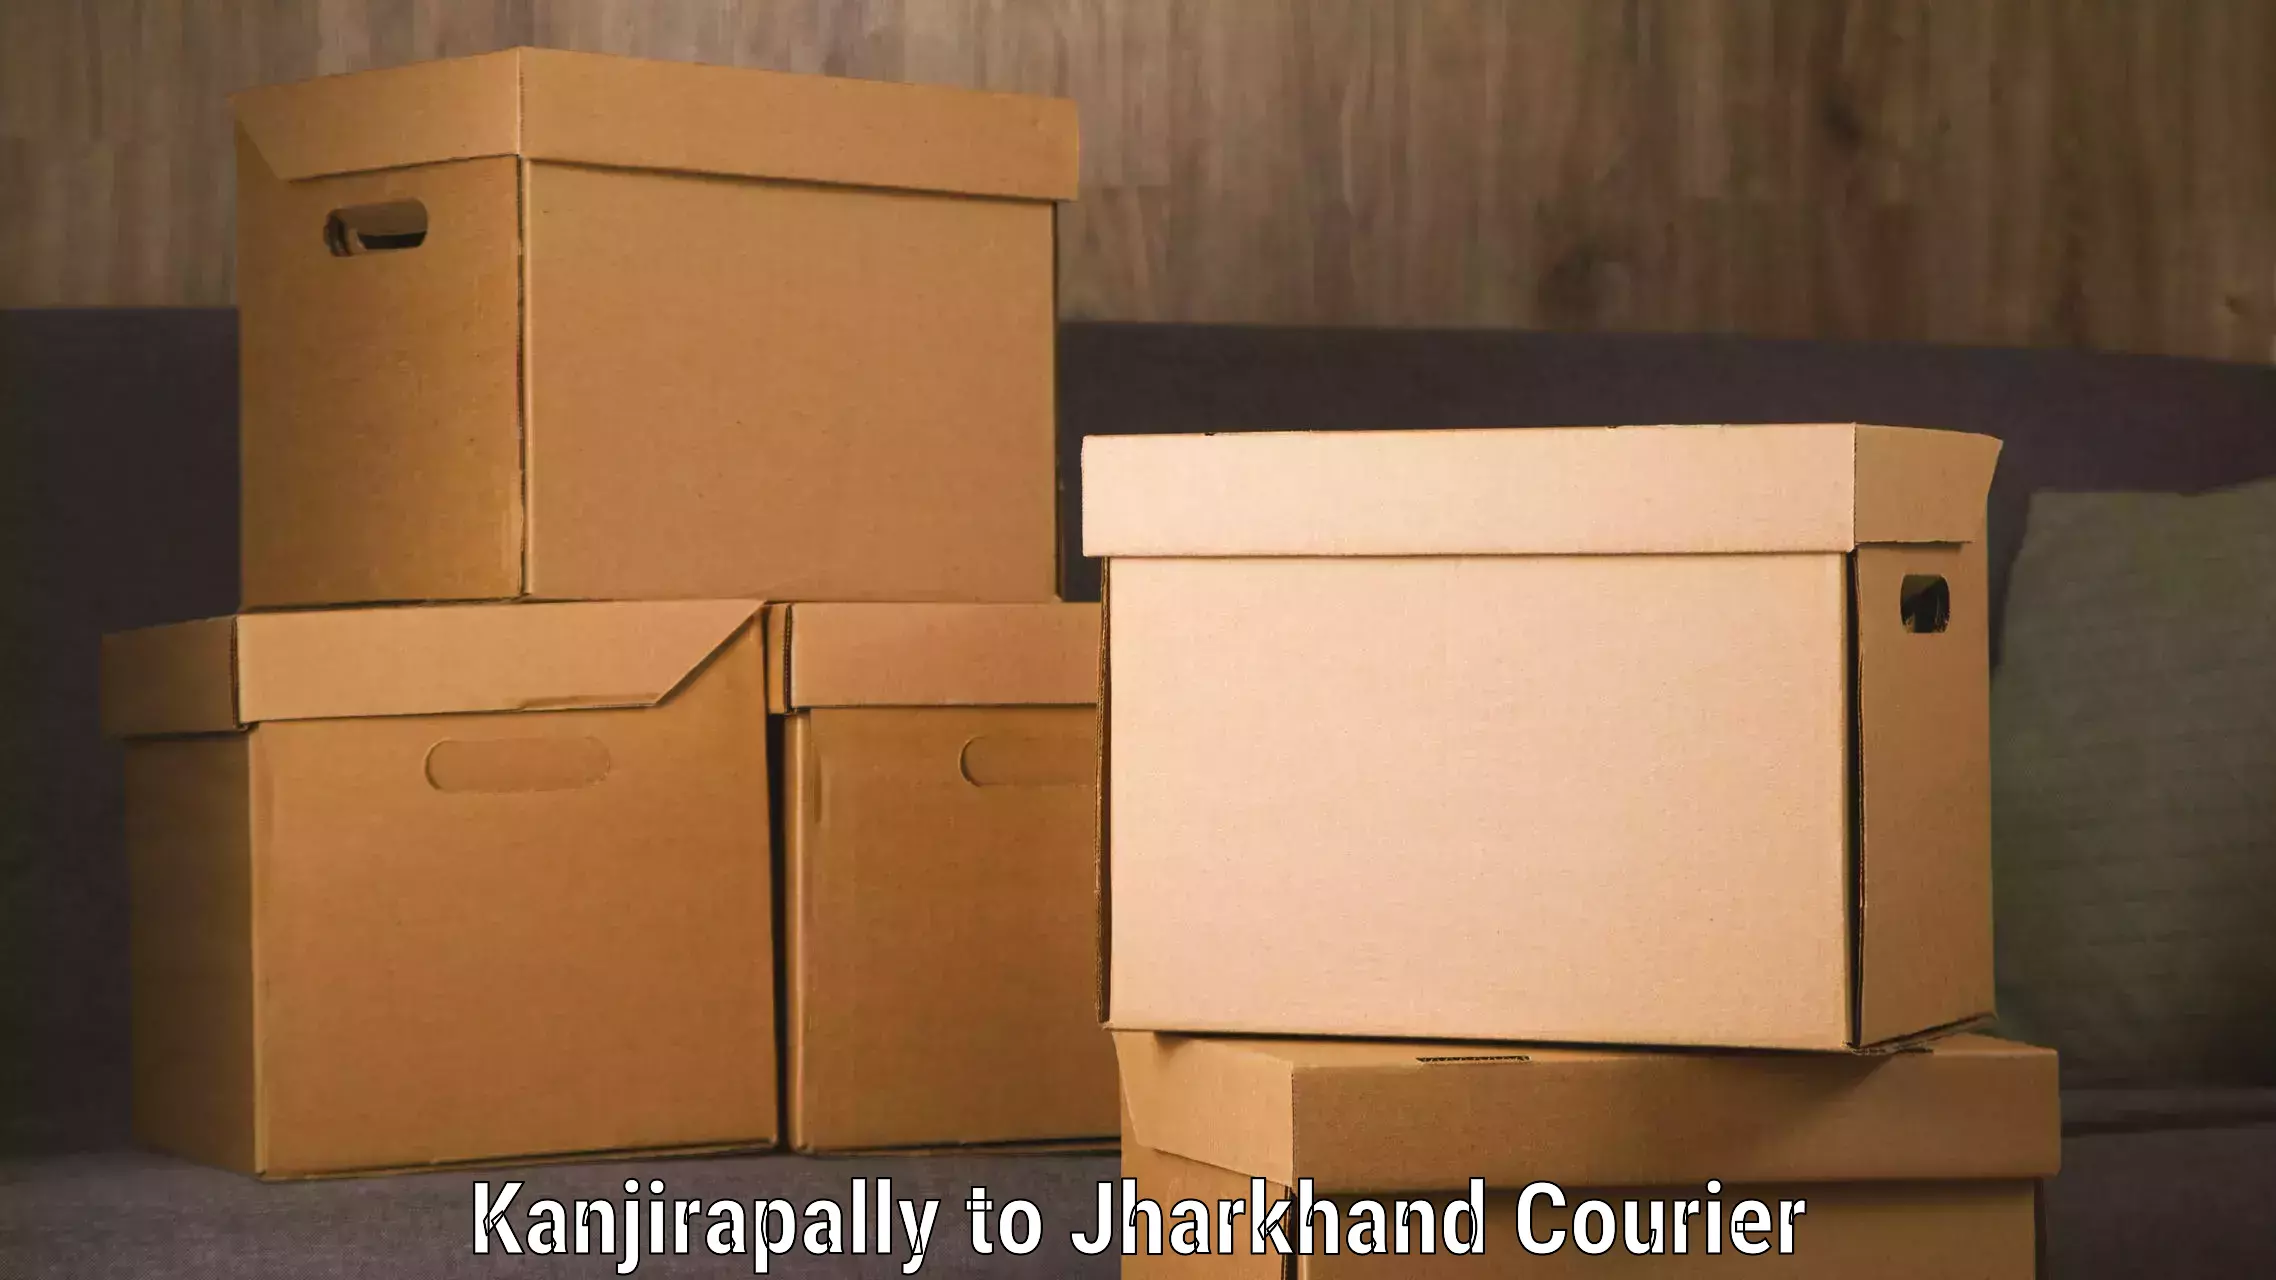 Reliable shipping partners Kanjirapally to Kedla